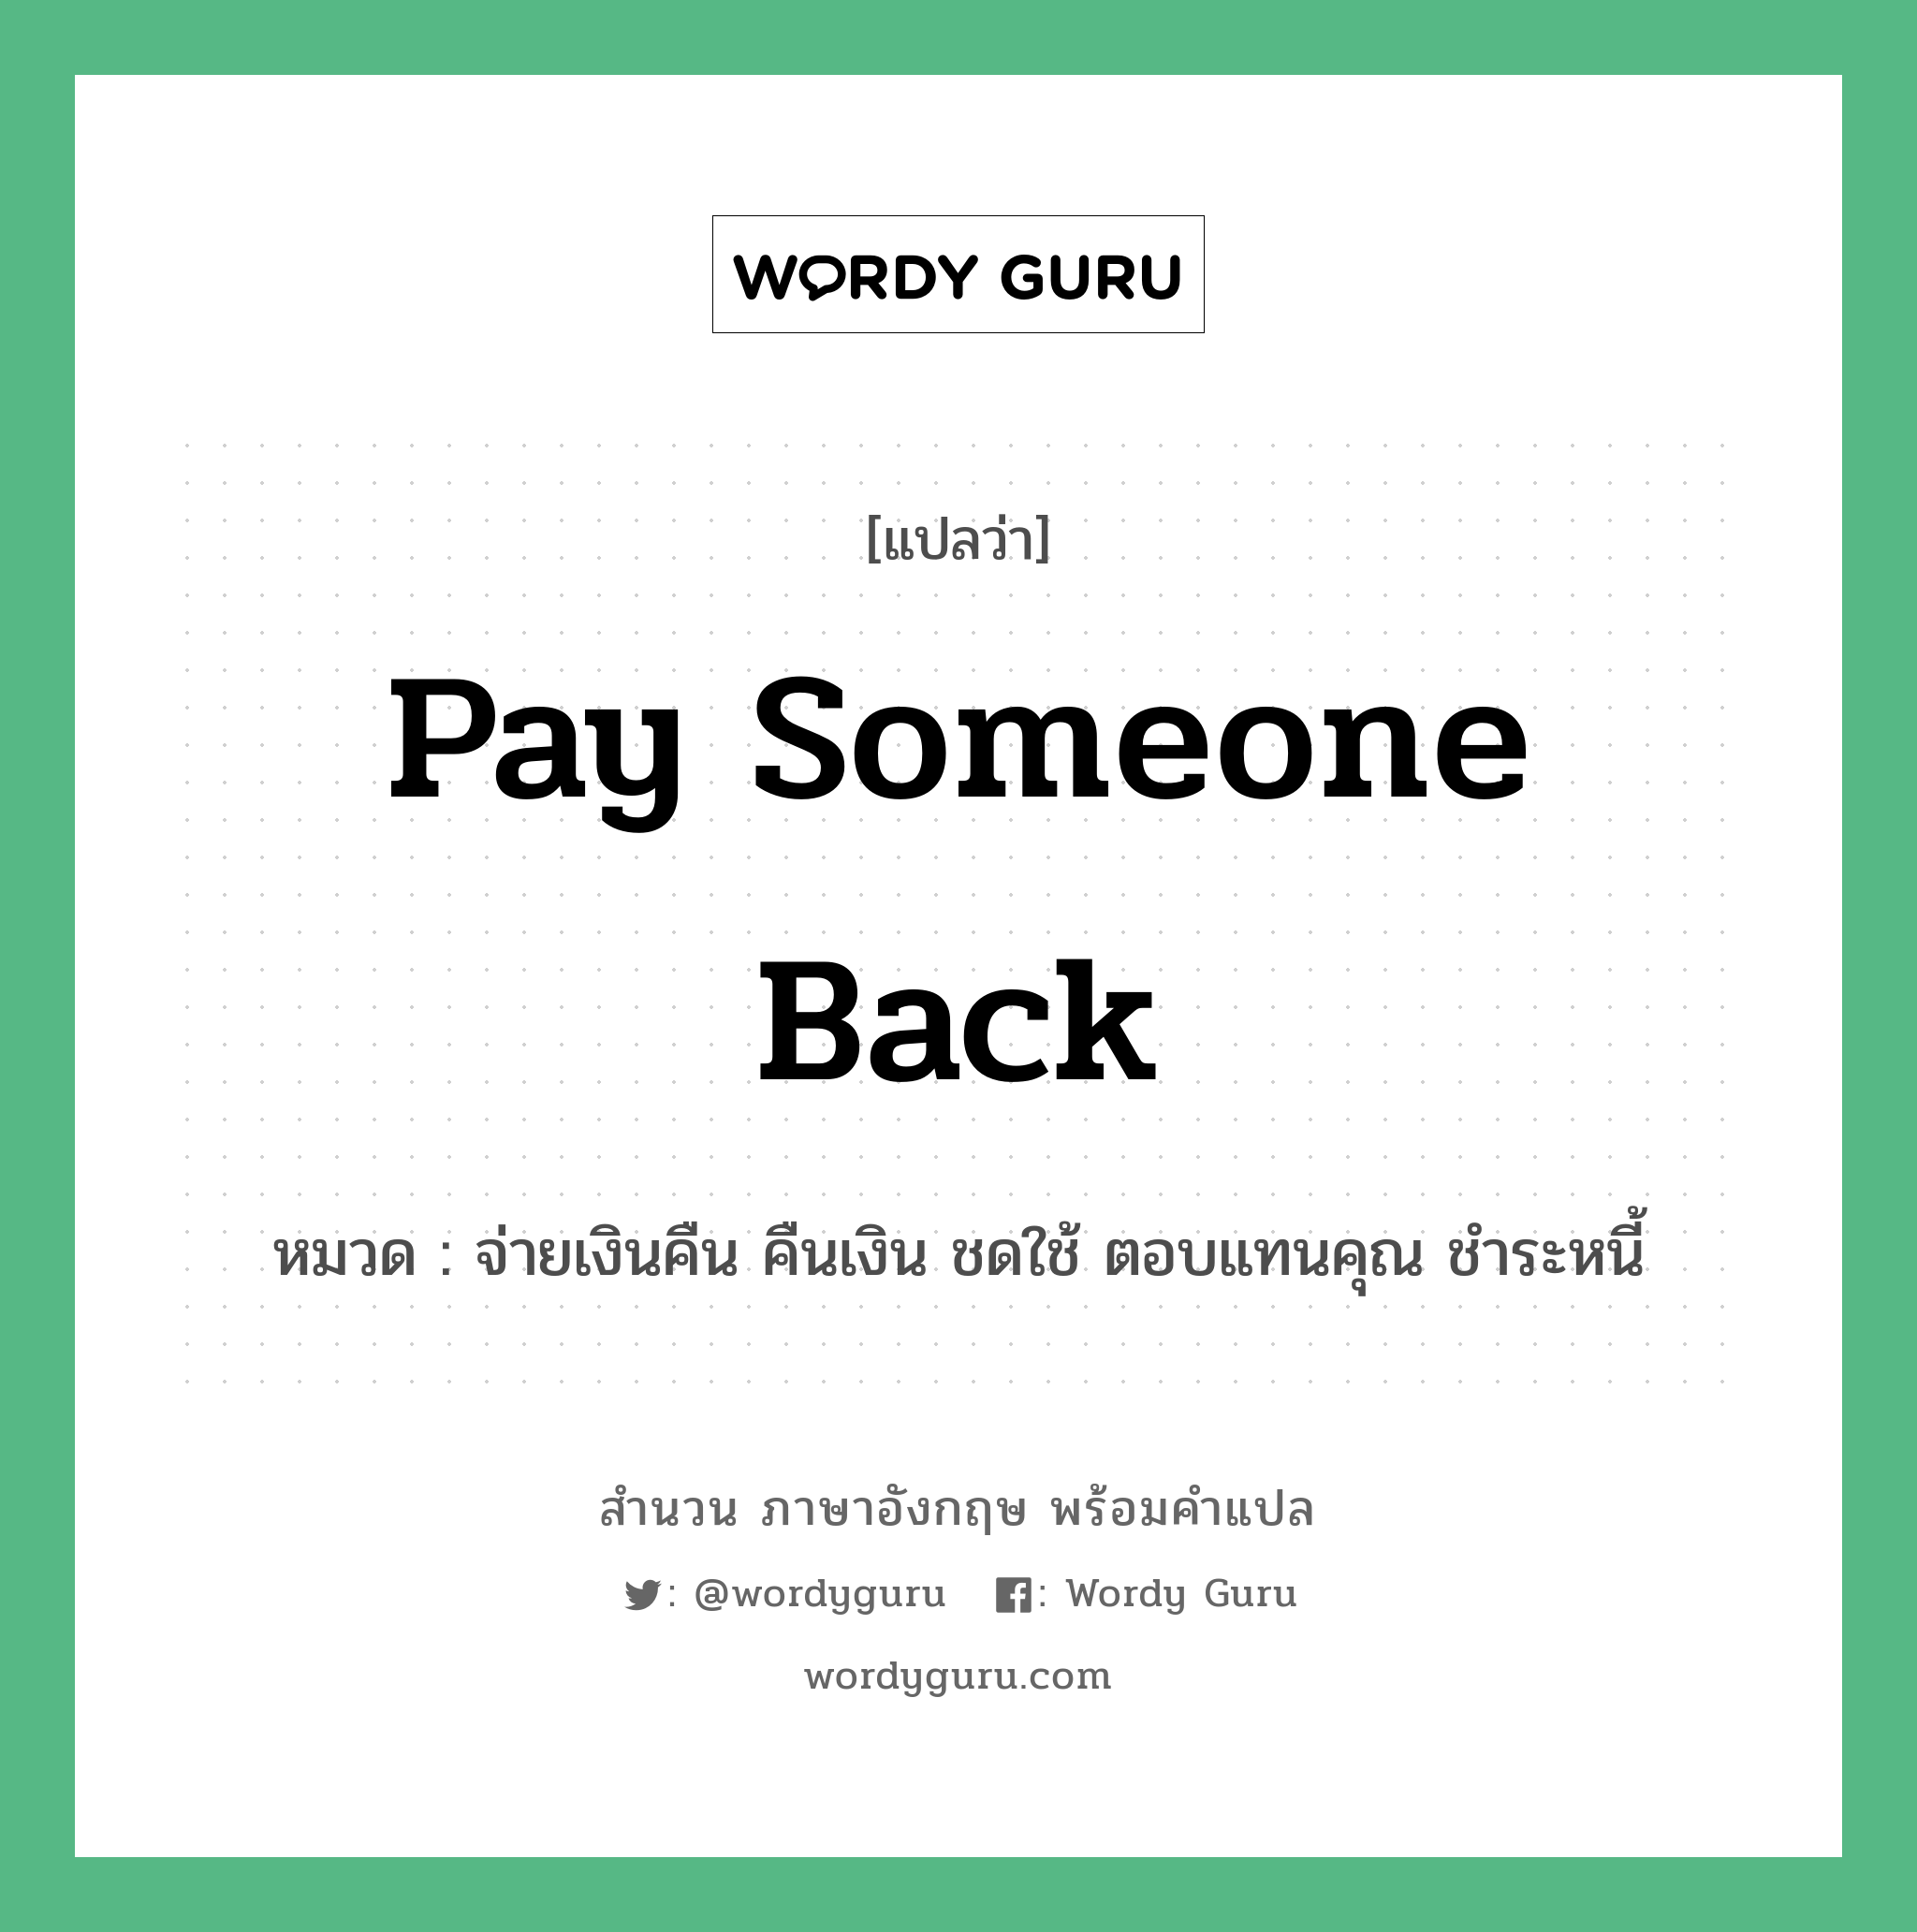 Pay someone back แปลว่า?, สำนวนภาษาอังกฤษ Pay someone back หมวด จ่ายเงินคืน คืนเงิน ชดใช้ ตอบแทนคุณ ชำระหนี้